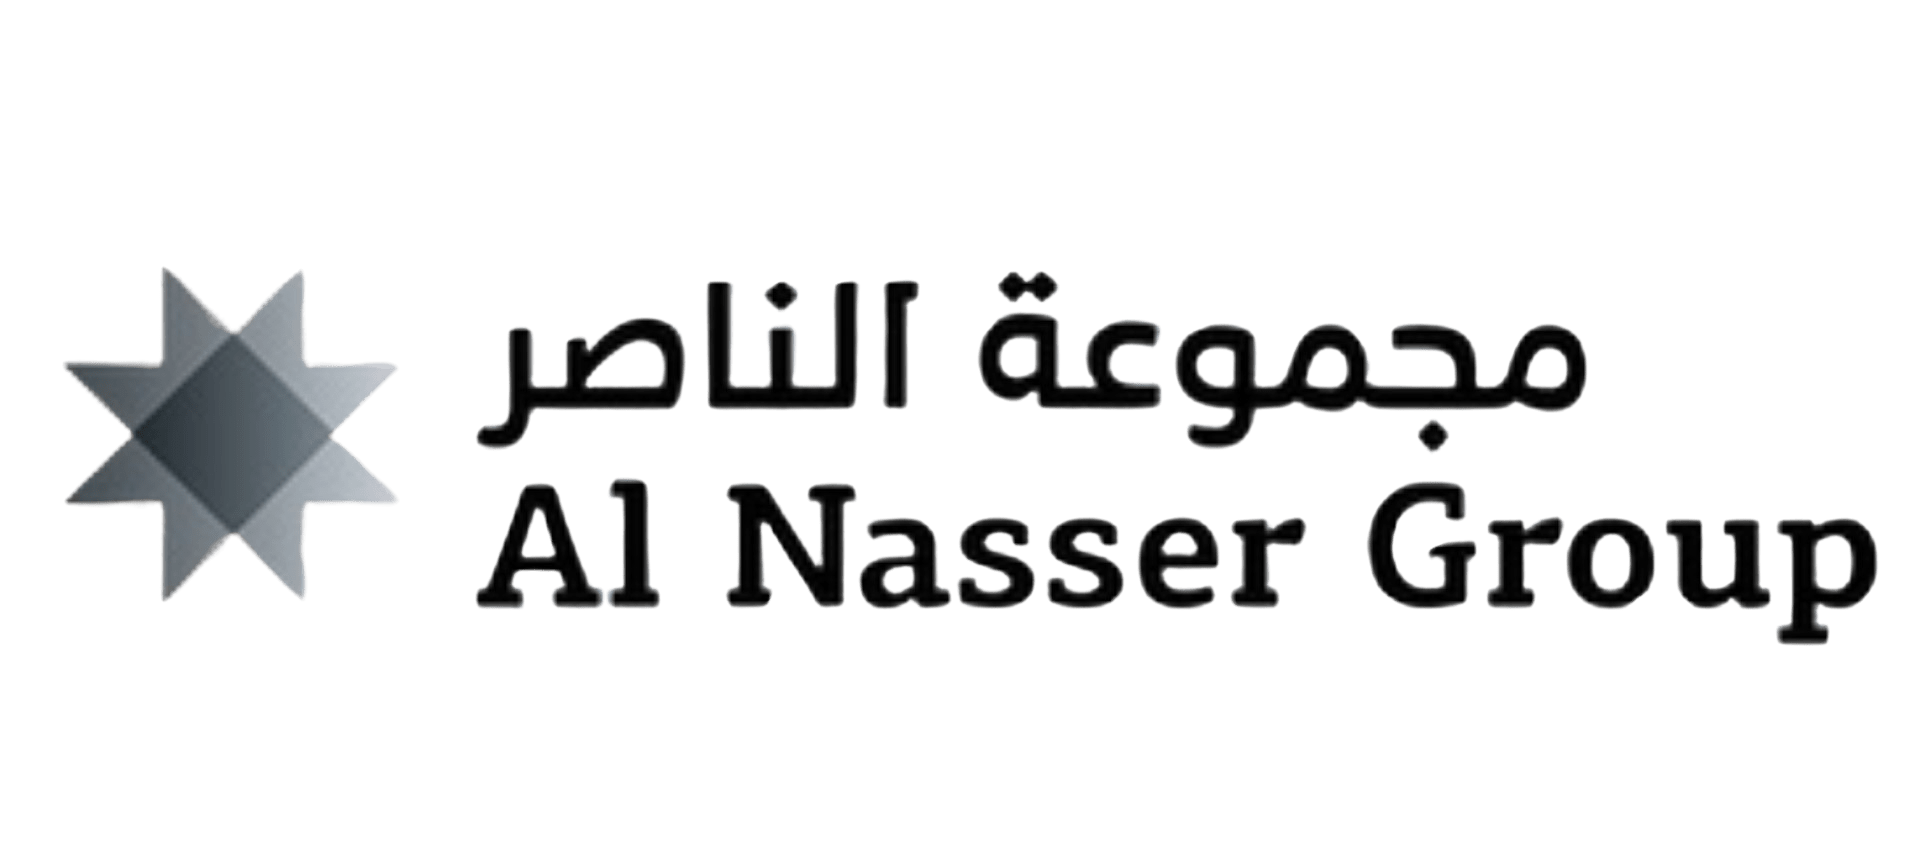 A1 Nasser Group